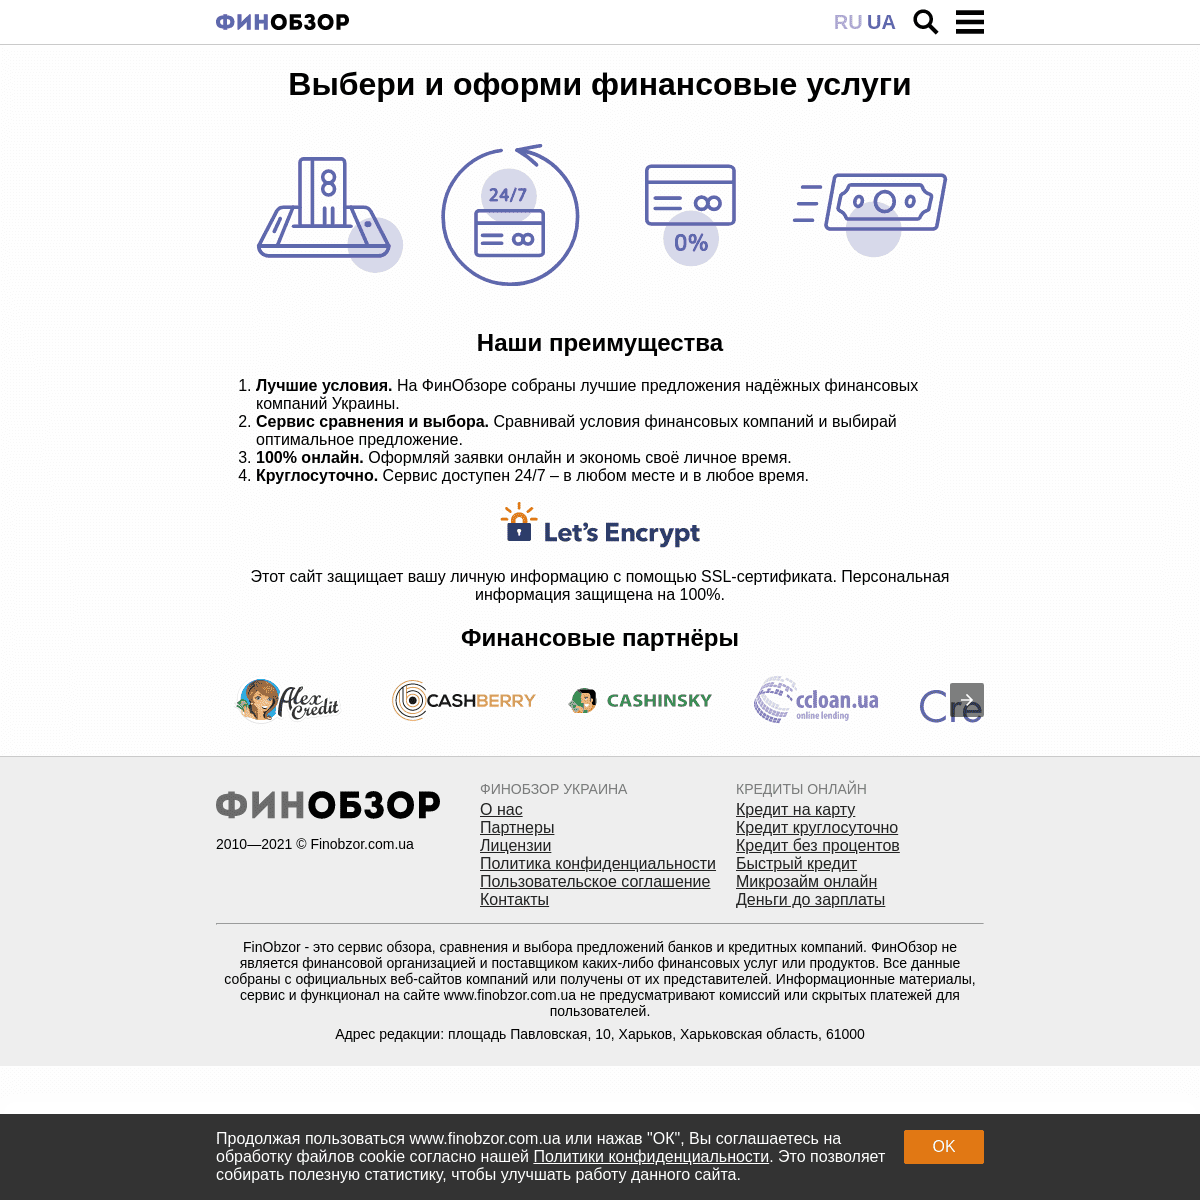 A complete backup of https://finobzor.com.ua